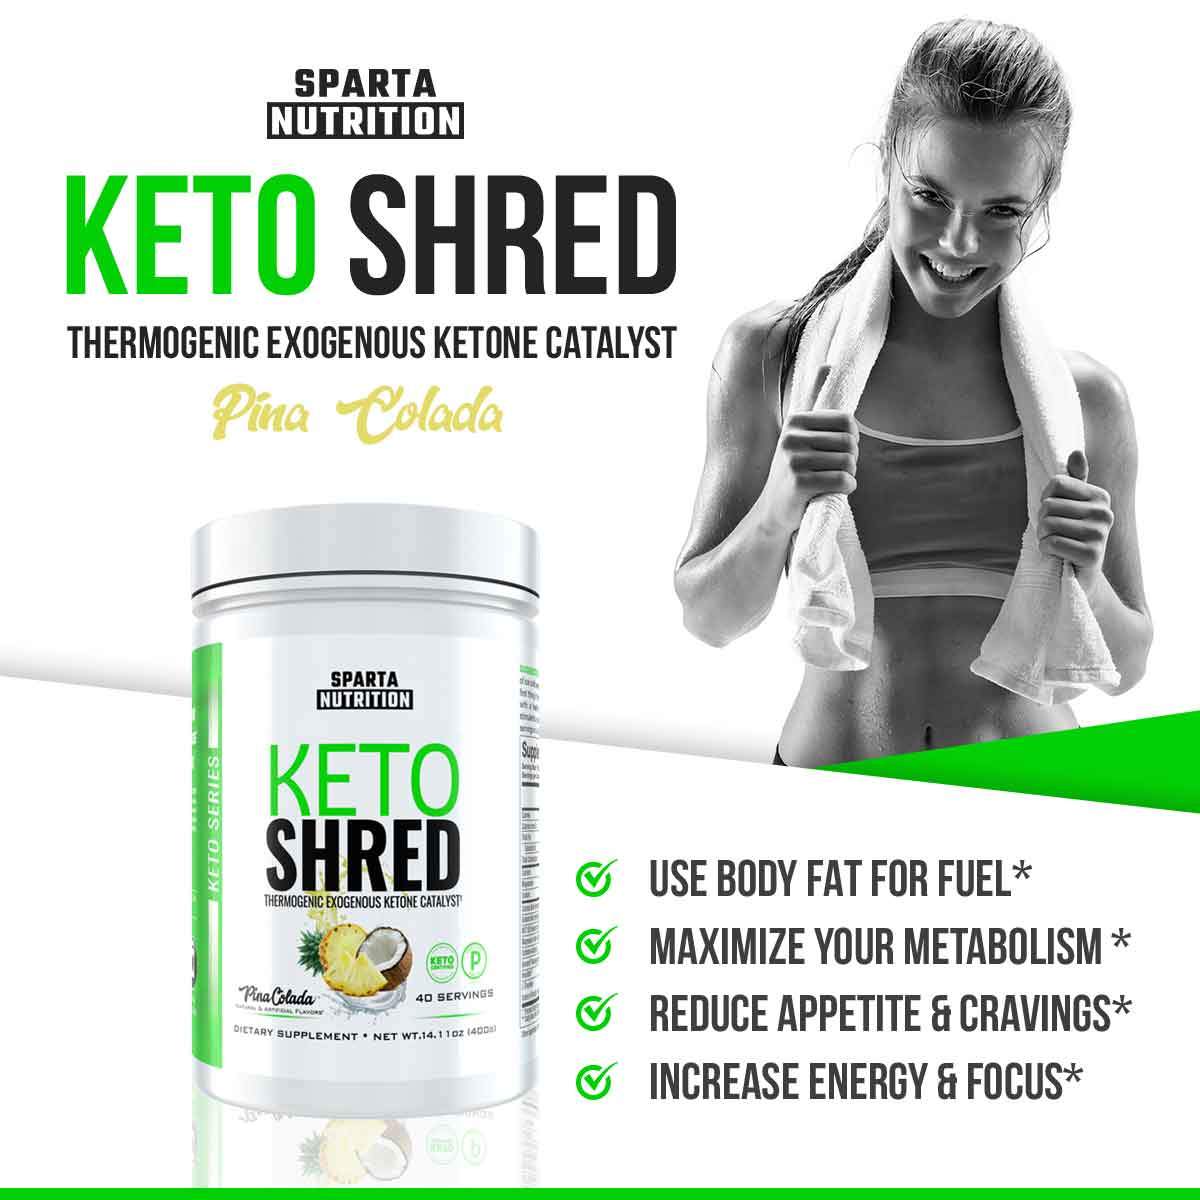 sole bhb sklep działanie ketoshred od sparta nutrition